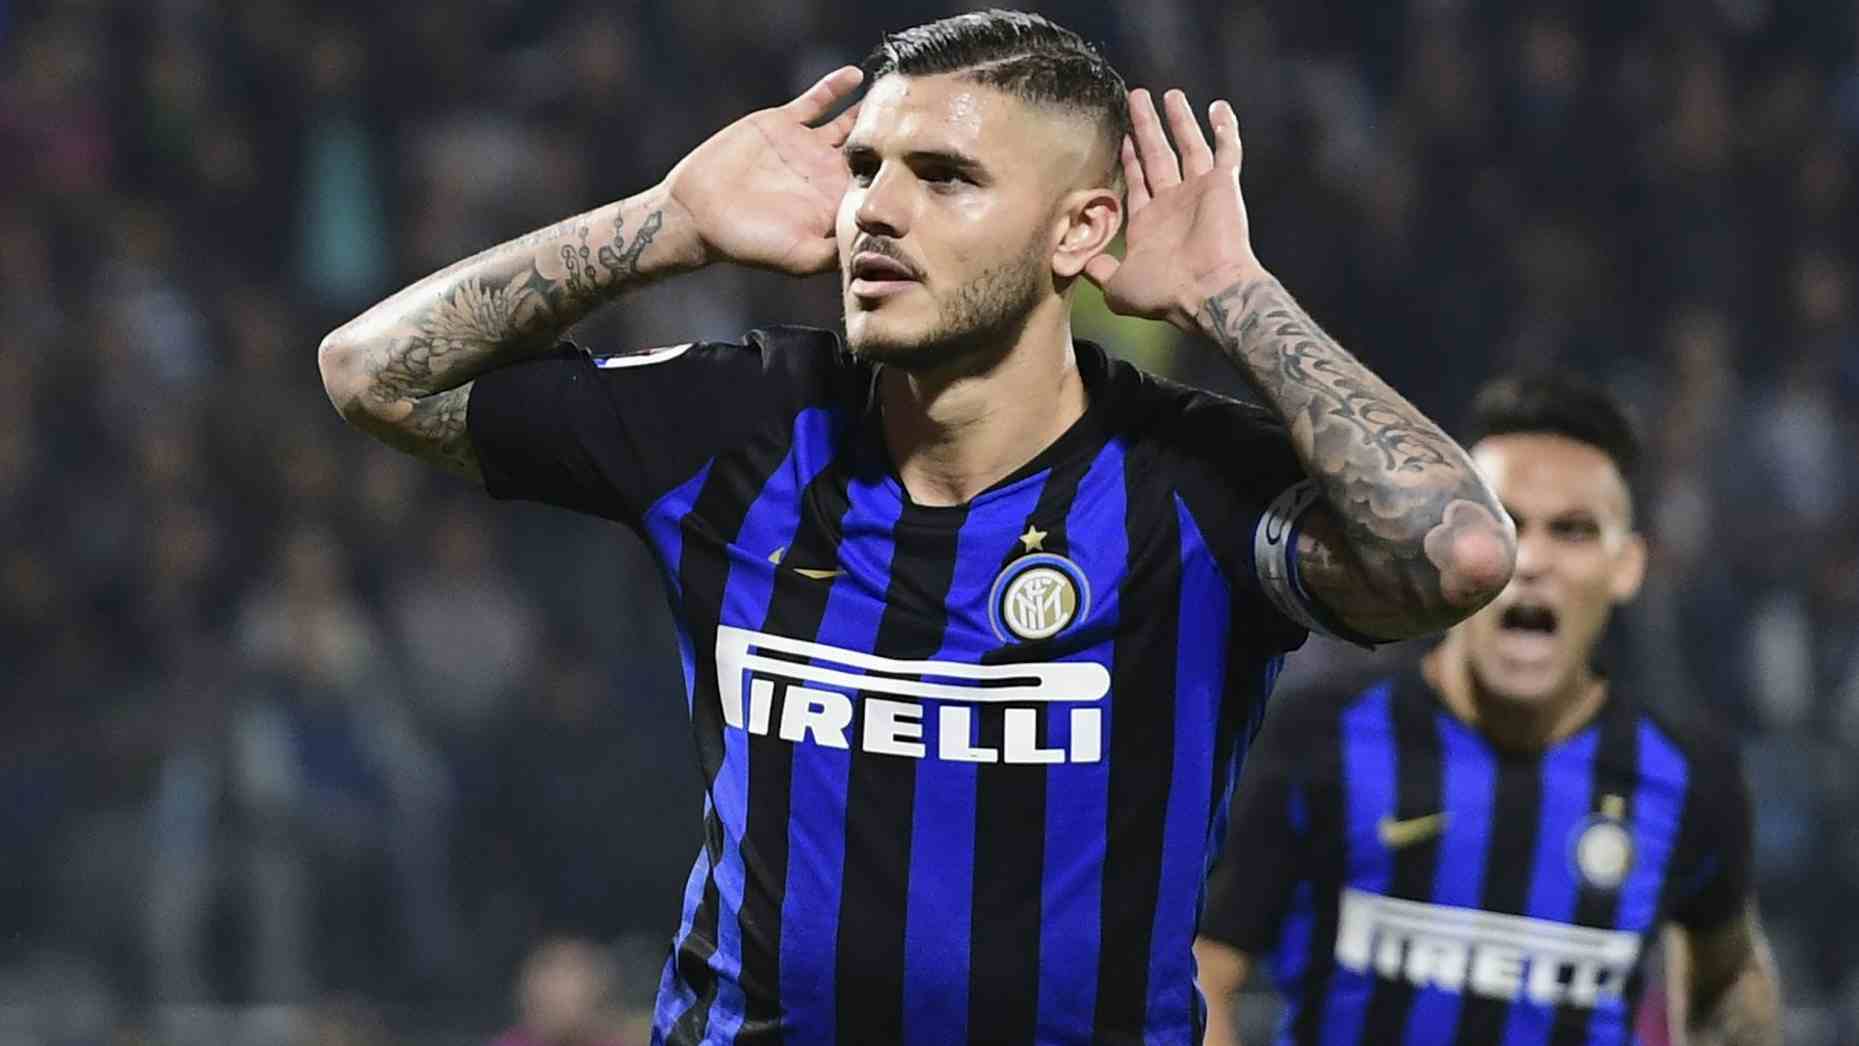 Il rimpianto dell'ex Icardi che rivendica qualche merito sull'Inter in finale di Champions